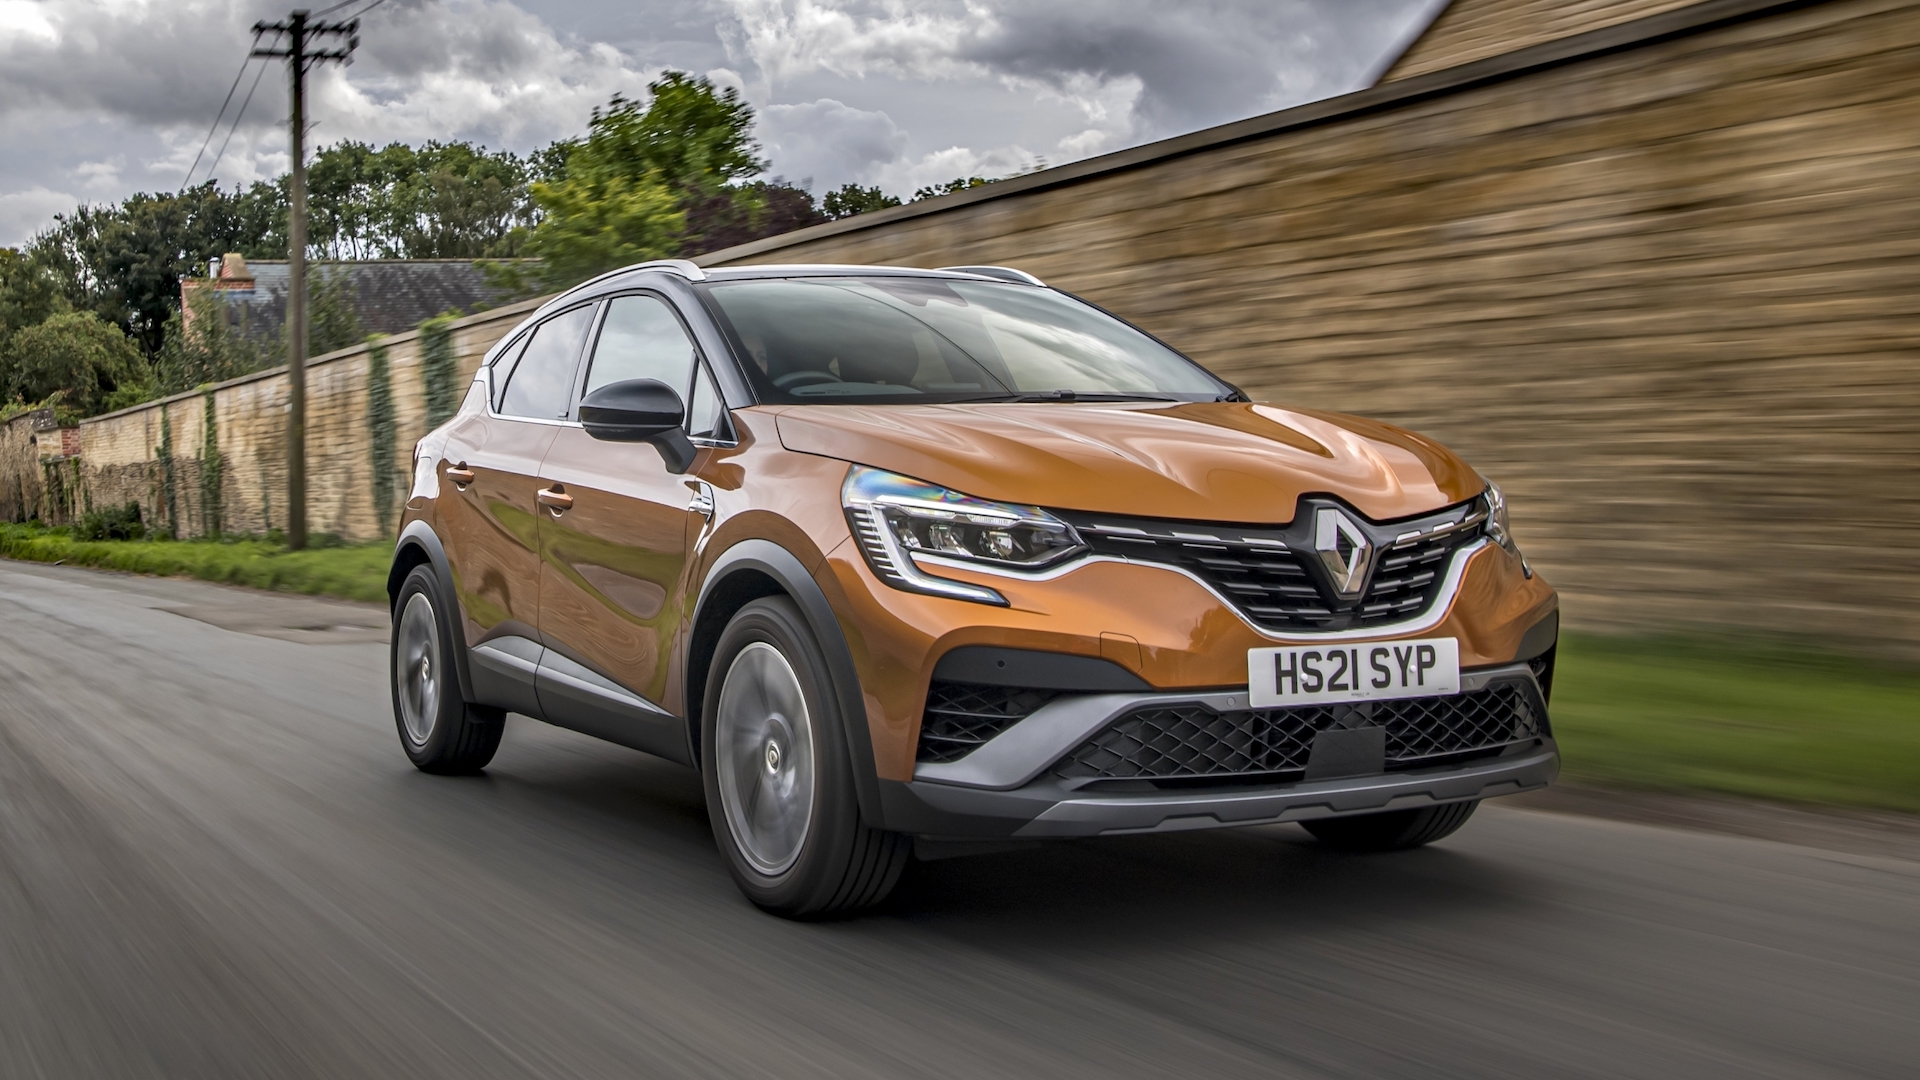 2021 Renault Captur in-depth review - does it have the 'va va voom